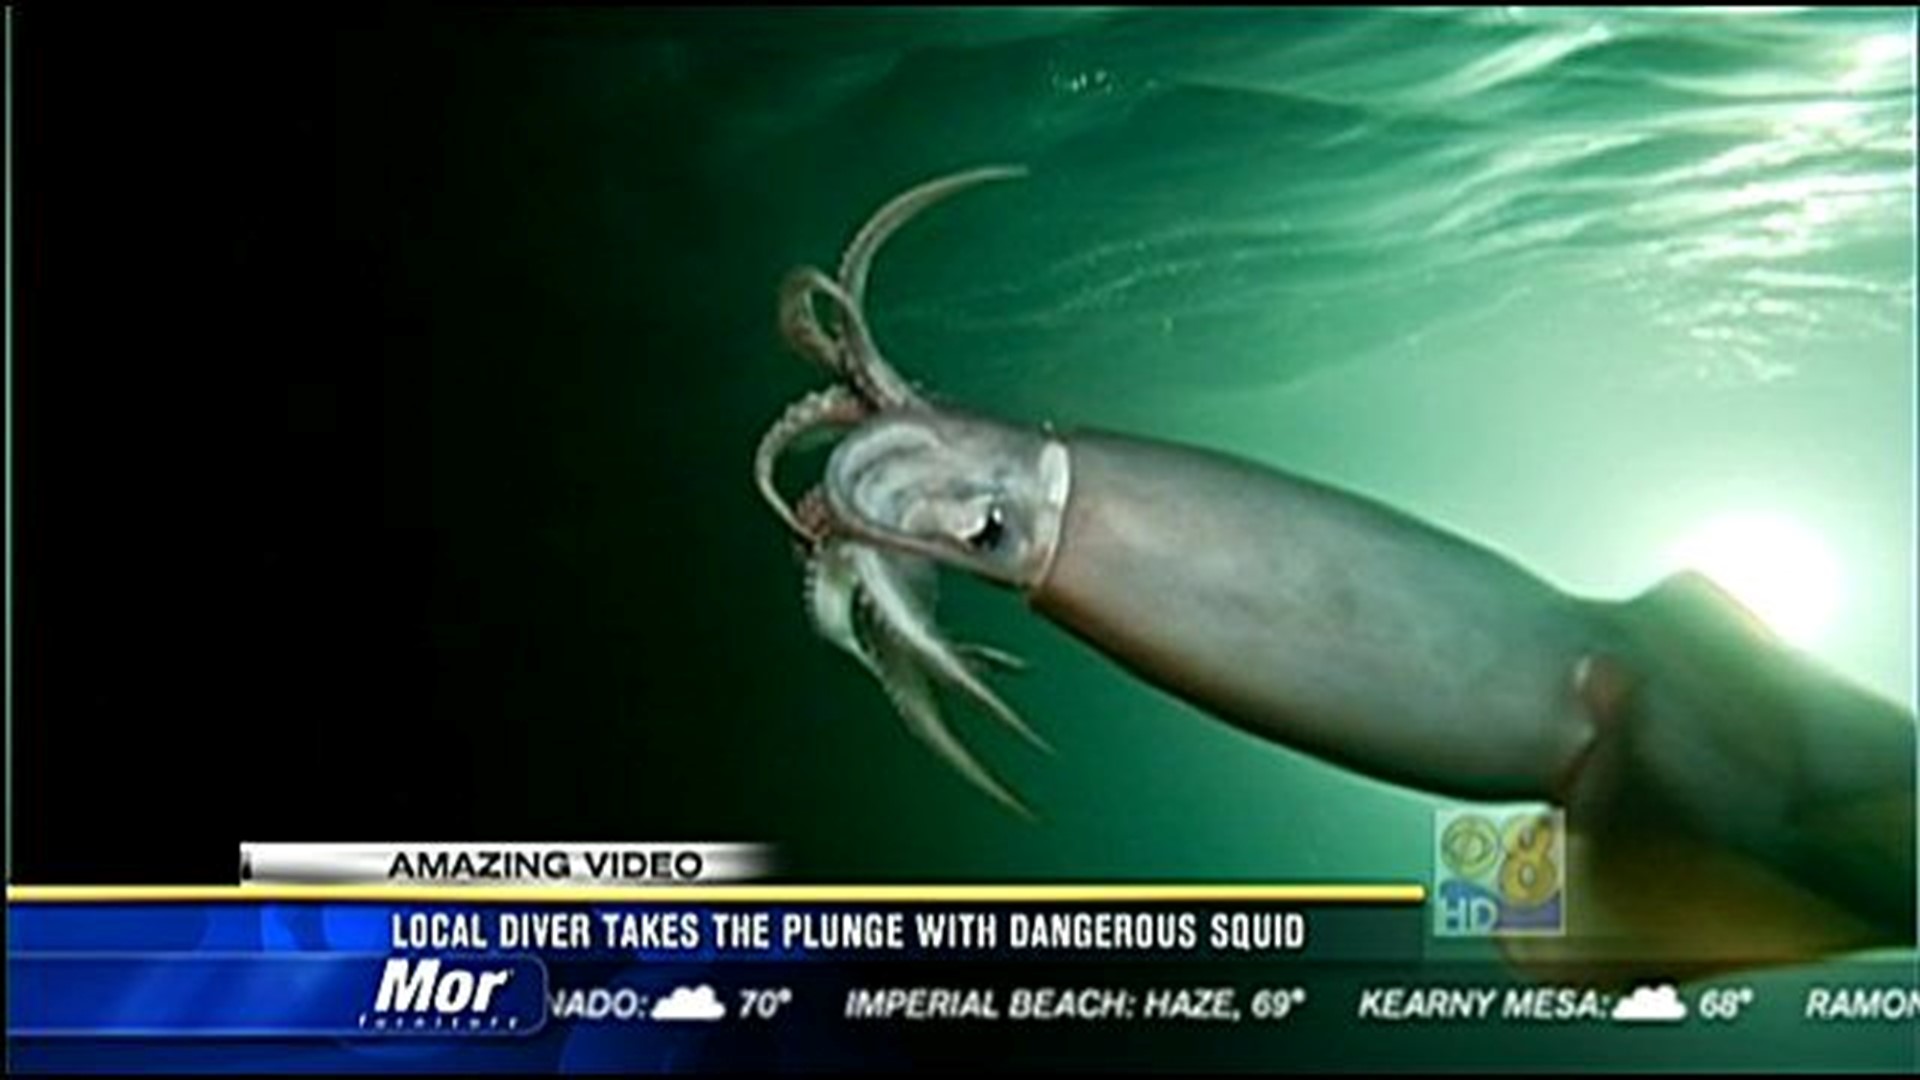 are squids dangerous